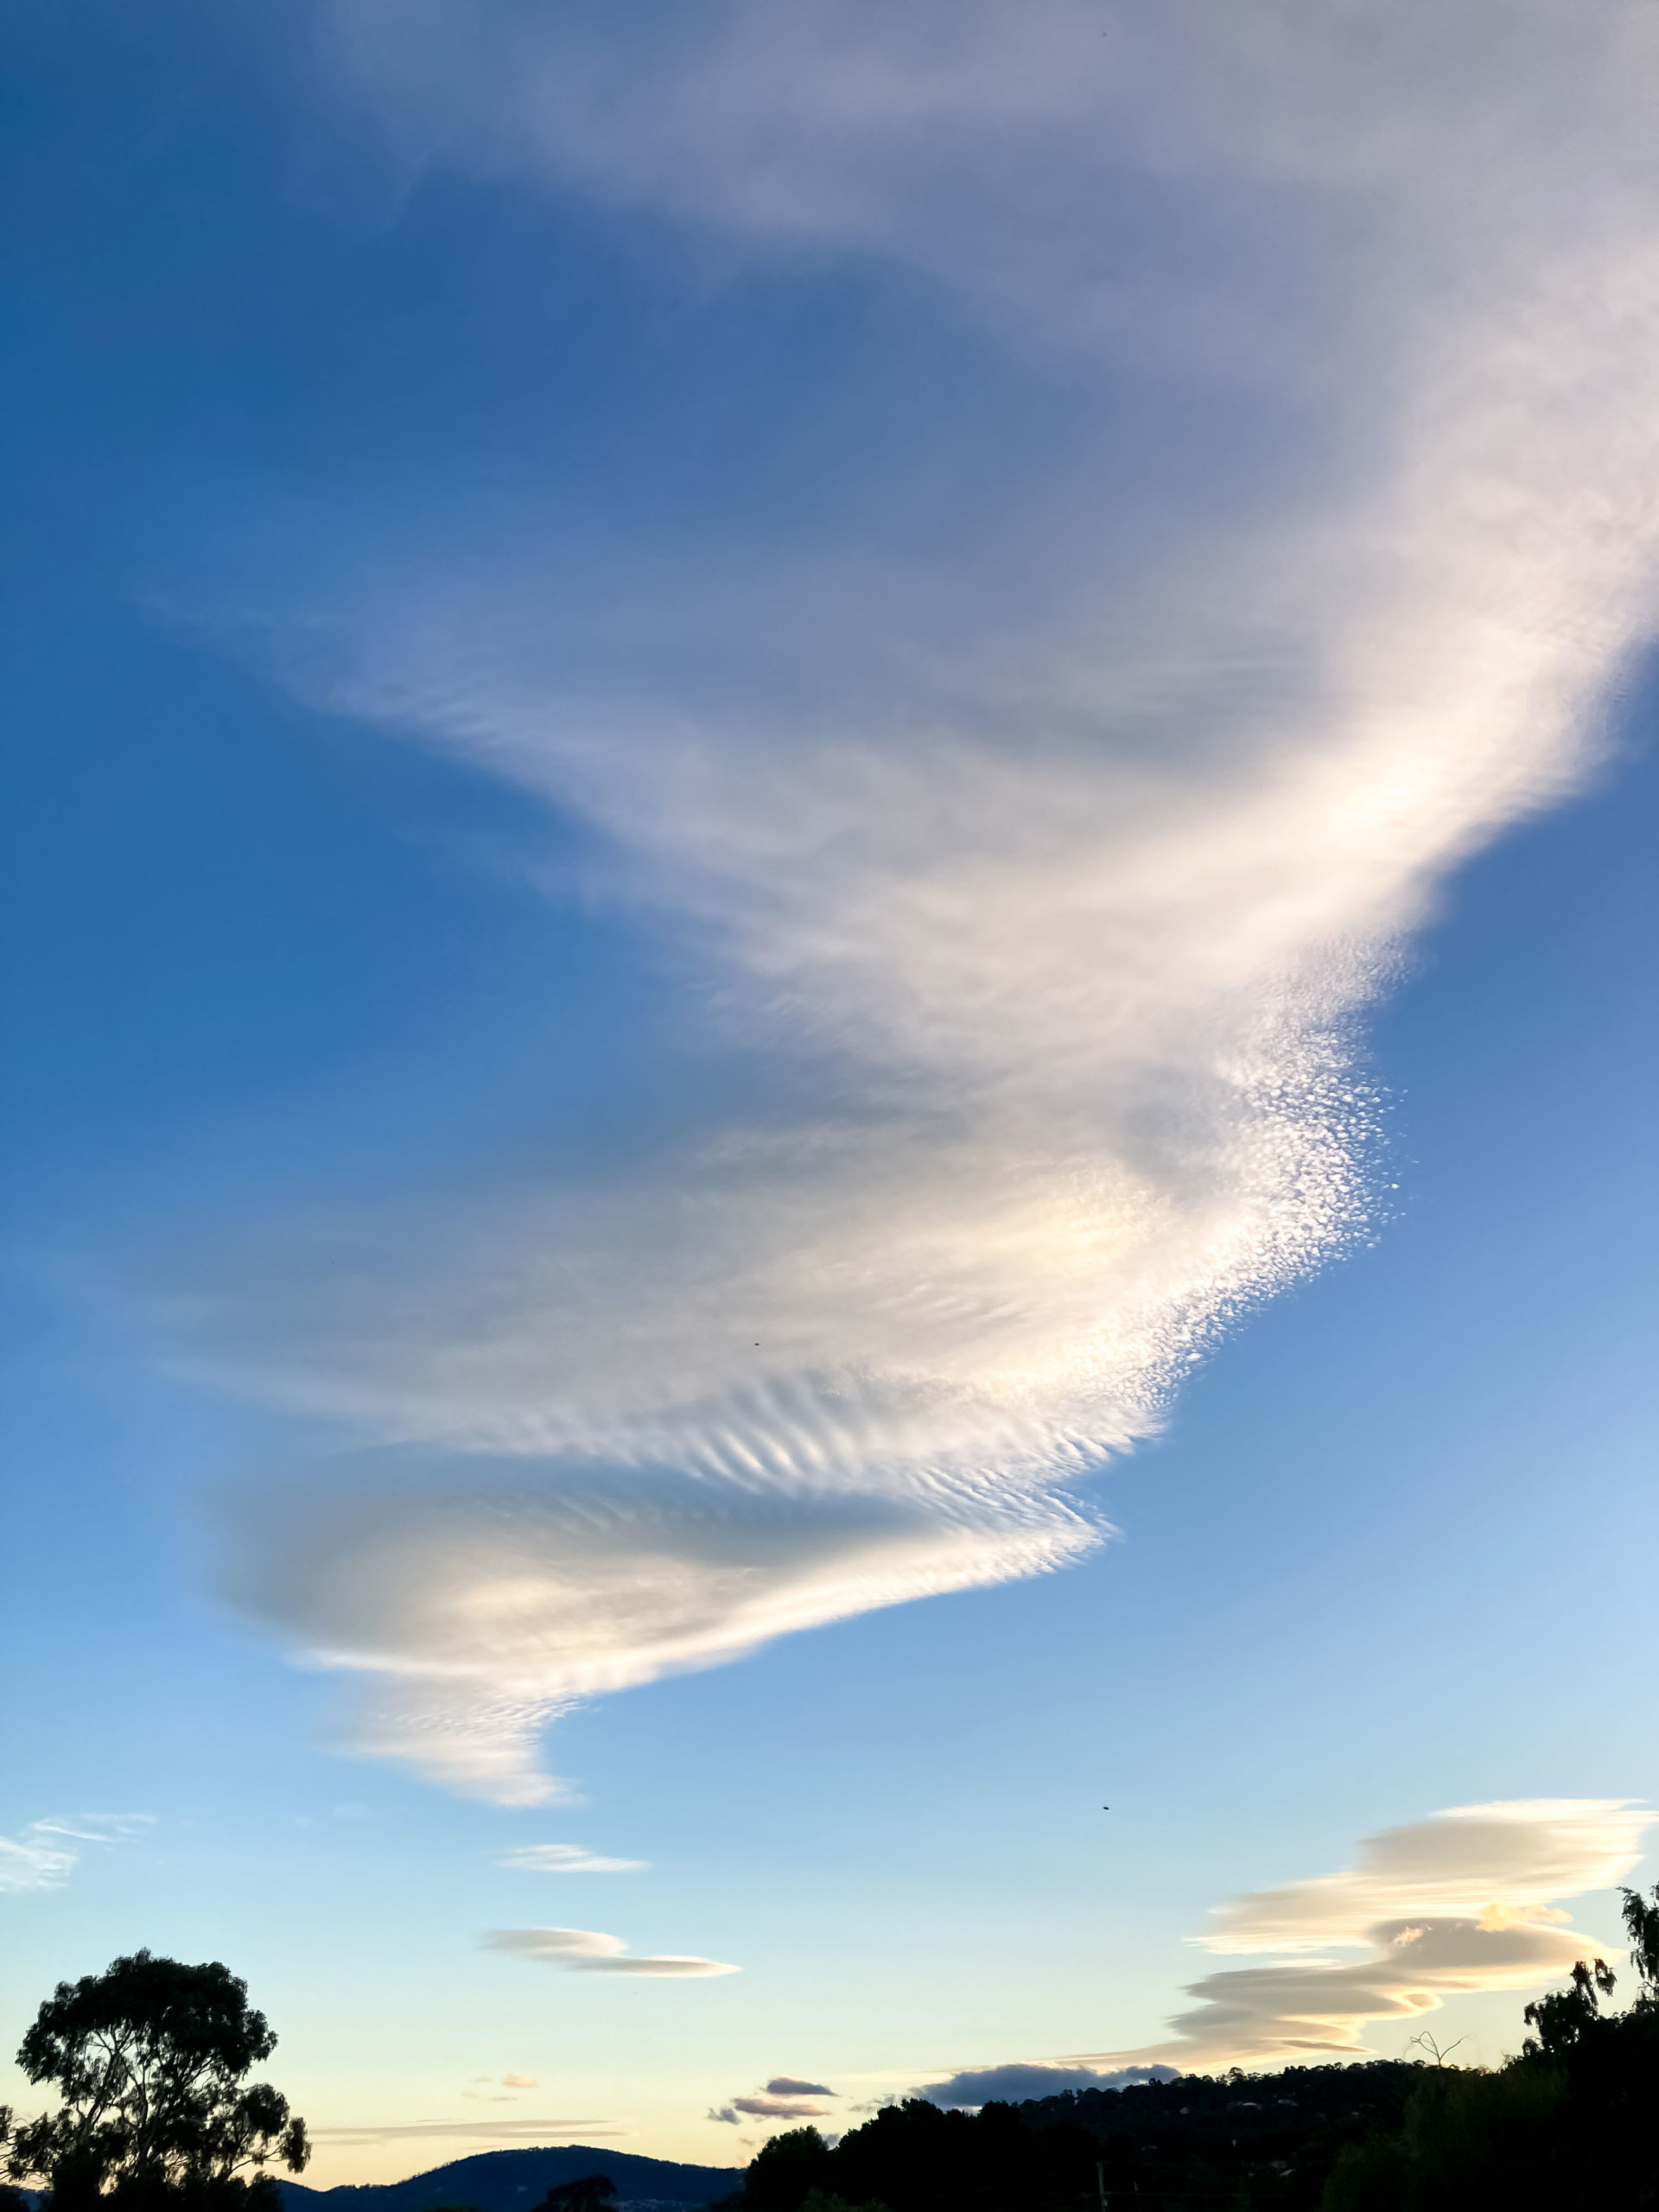 A white, tornado-shaped cloud in a blue sky